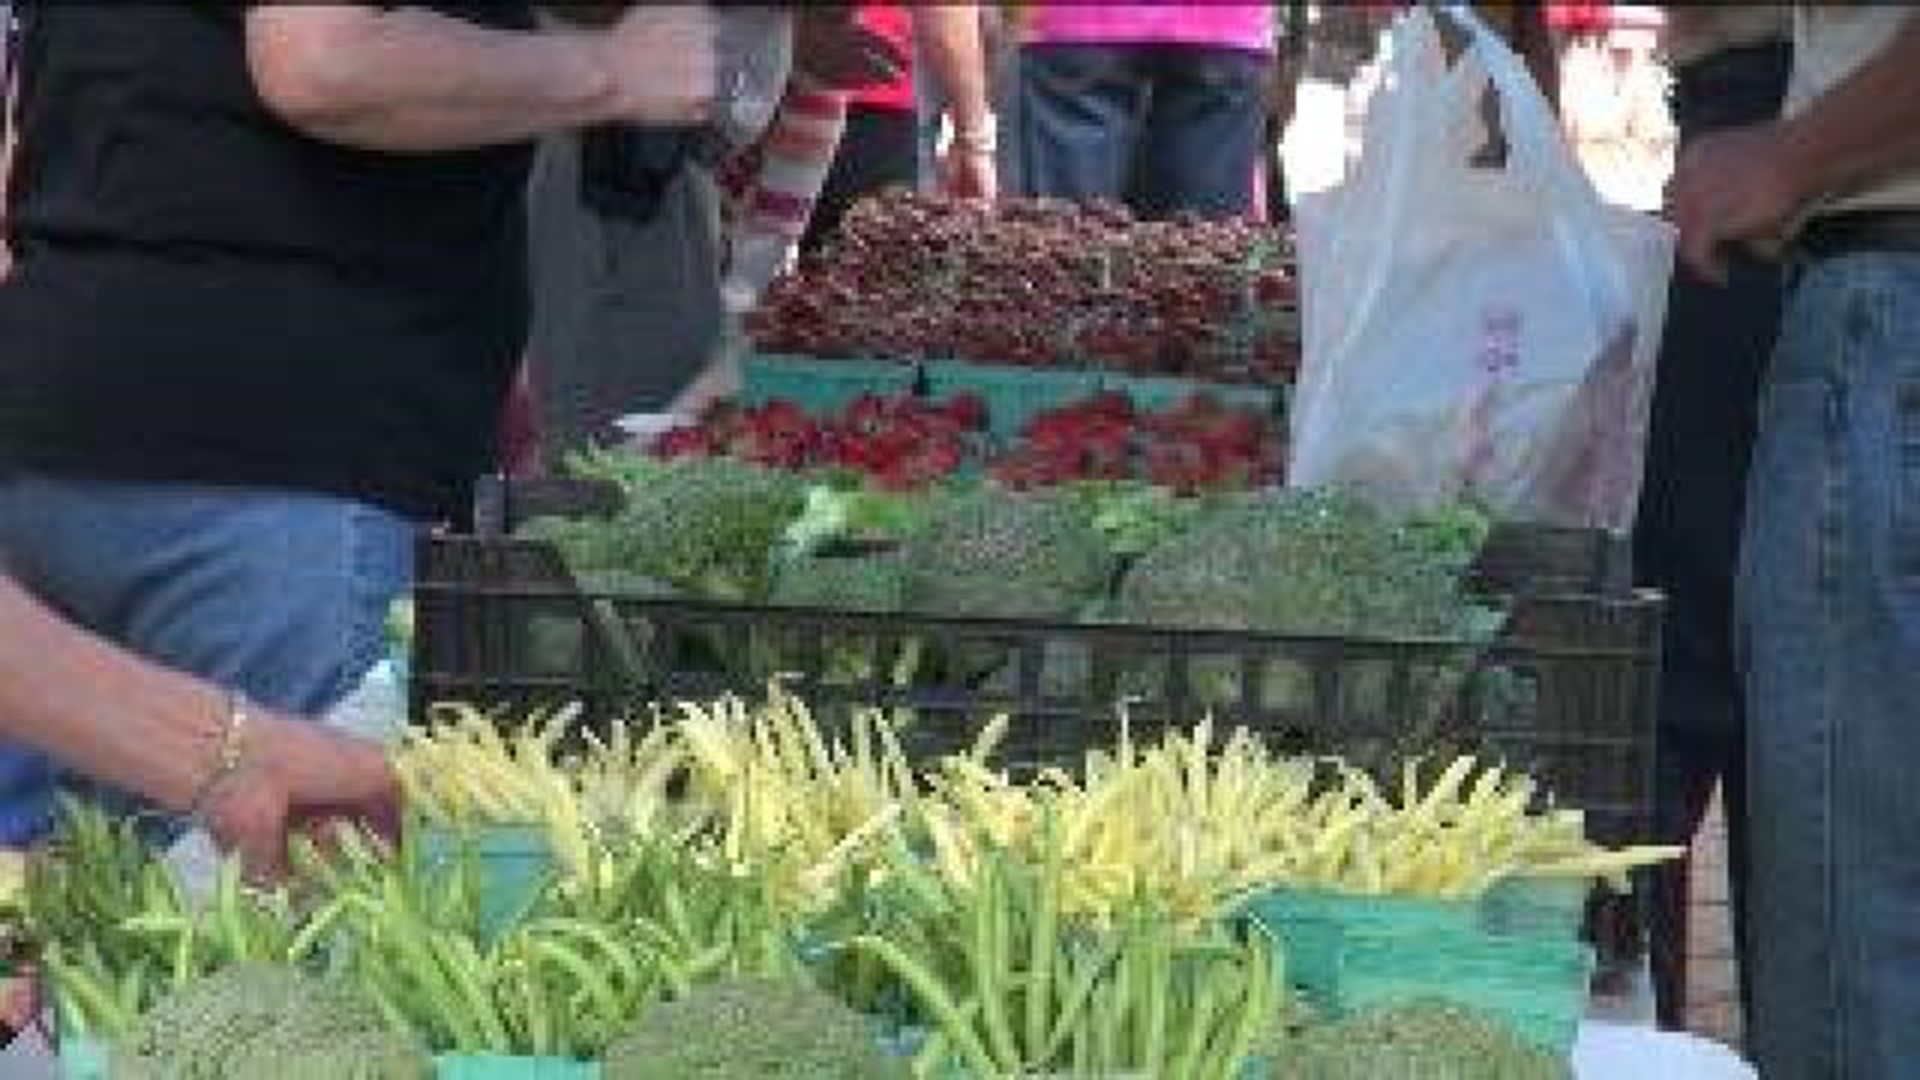 Farmer’s Market Opens in Wilkes-Barre